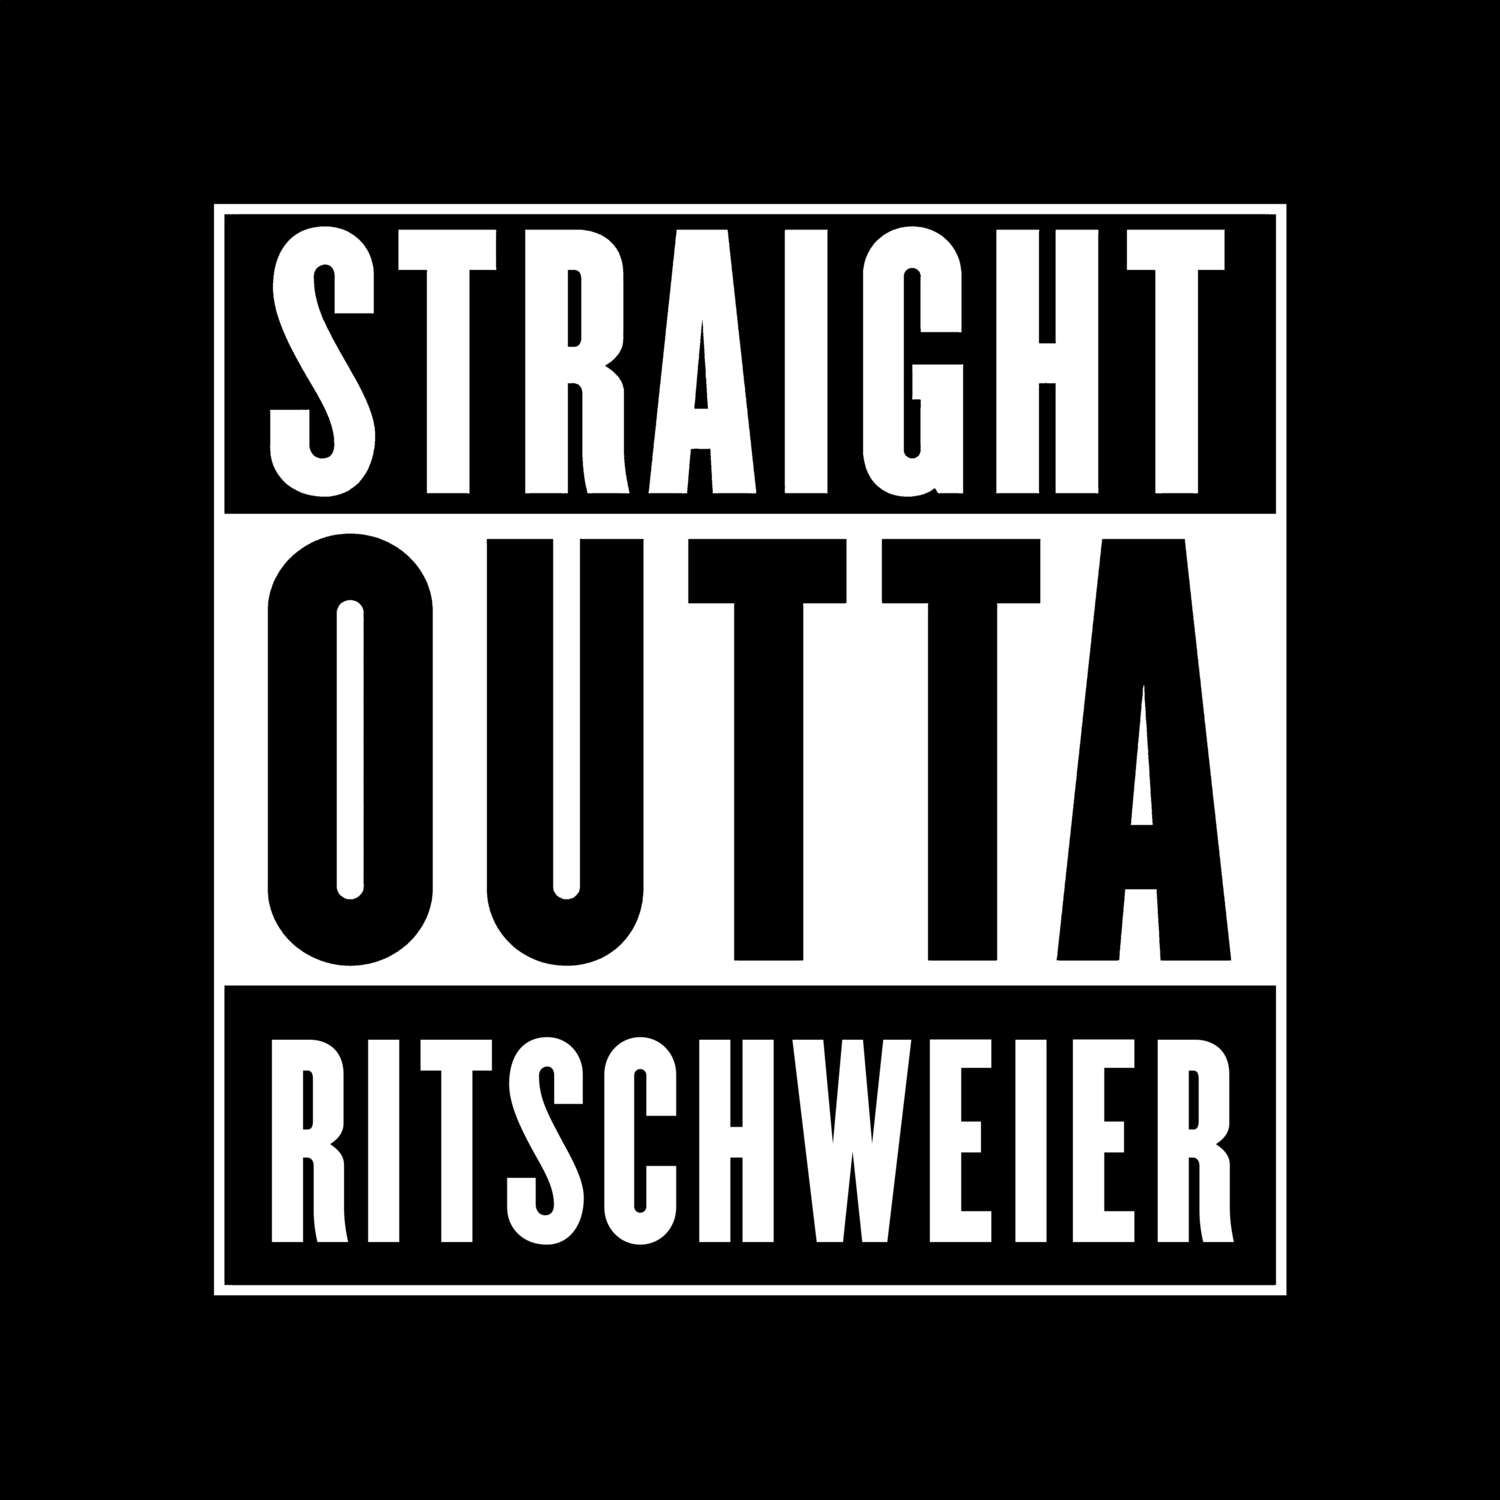 Ritschweier T-Shirt »Straight Outta«